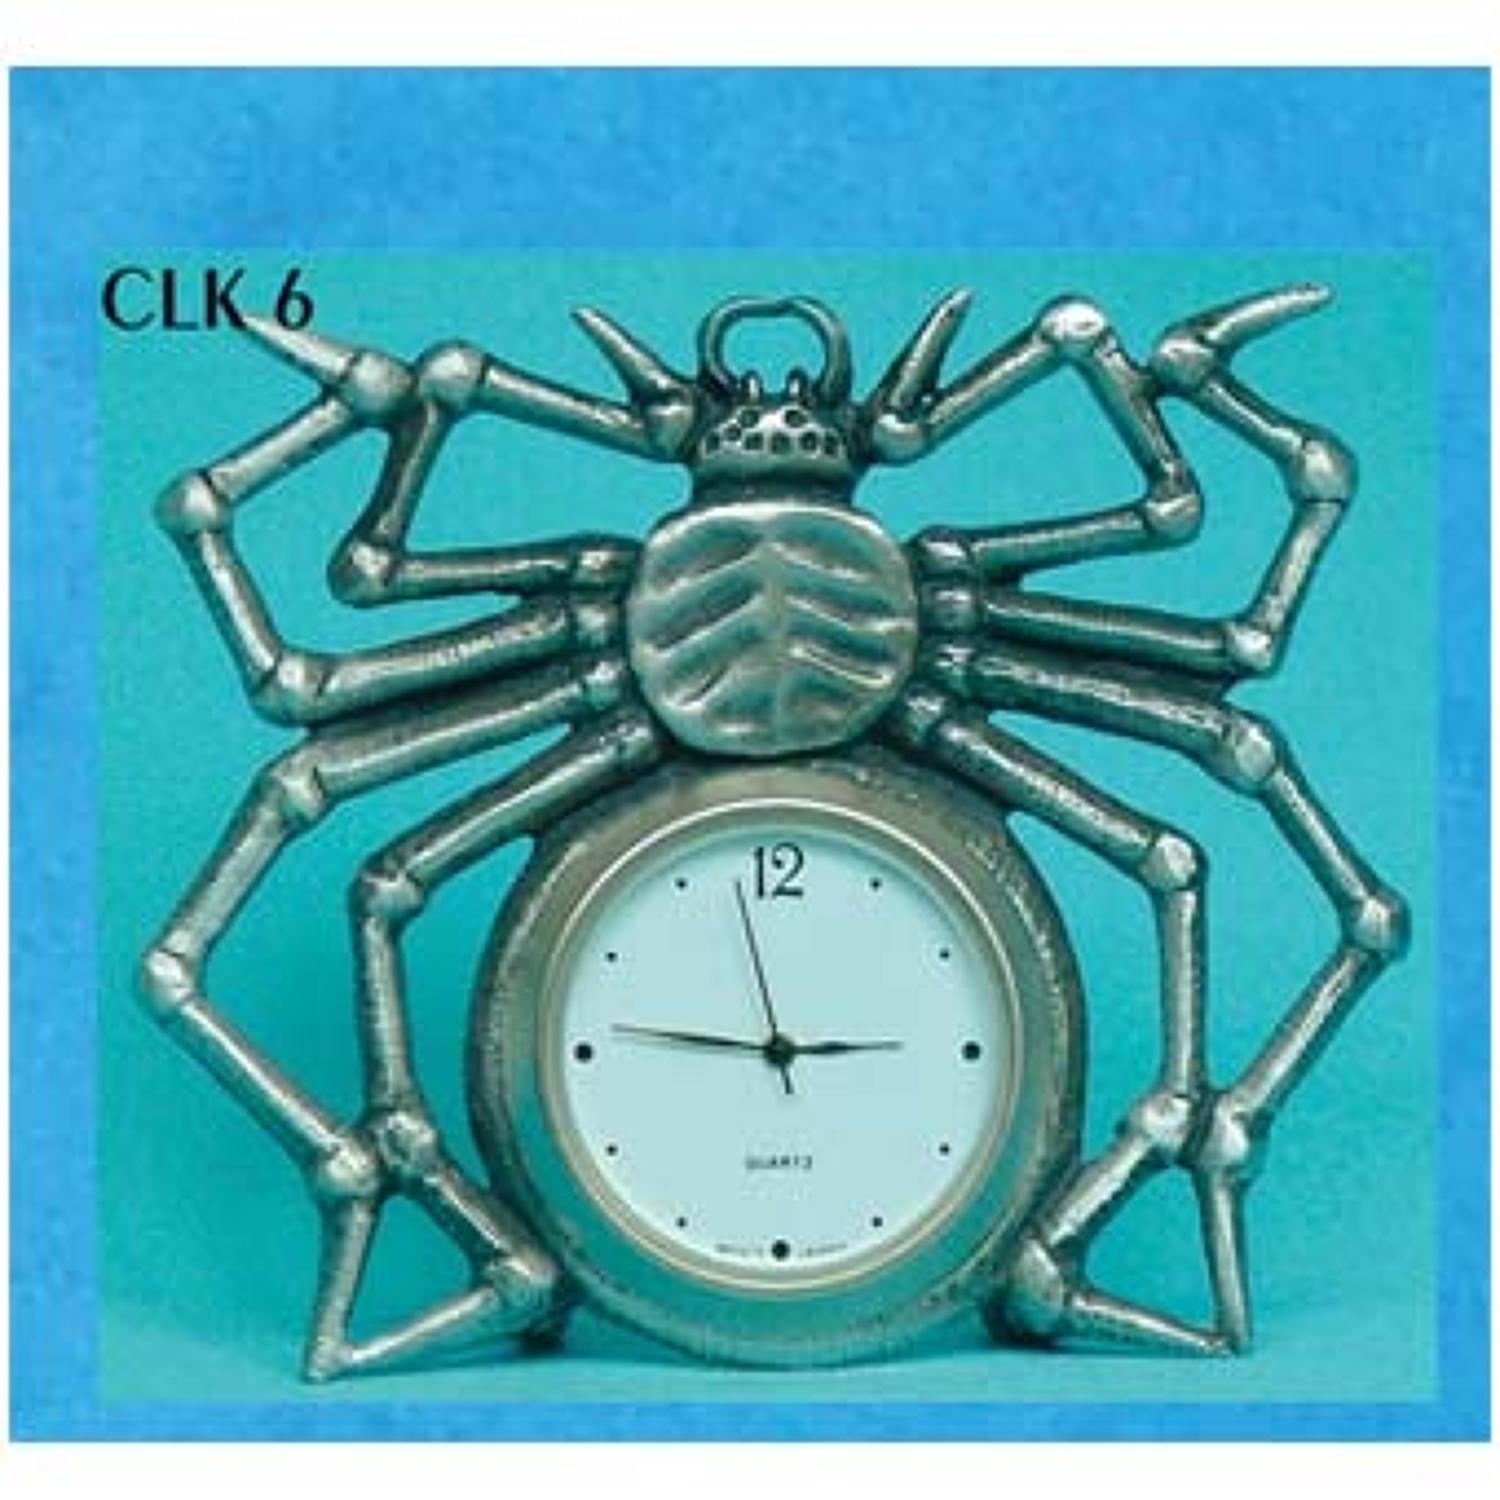 CLK6 Spider